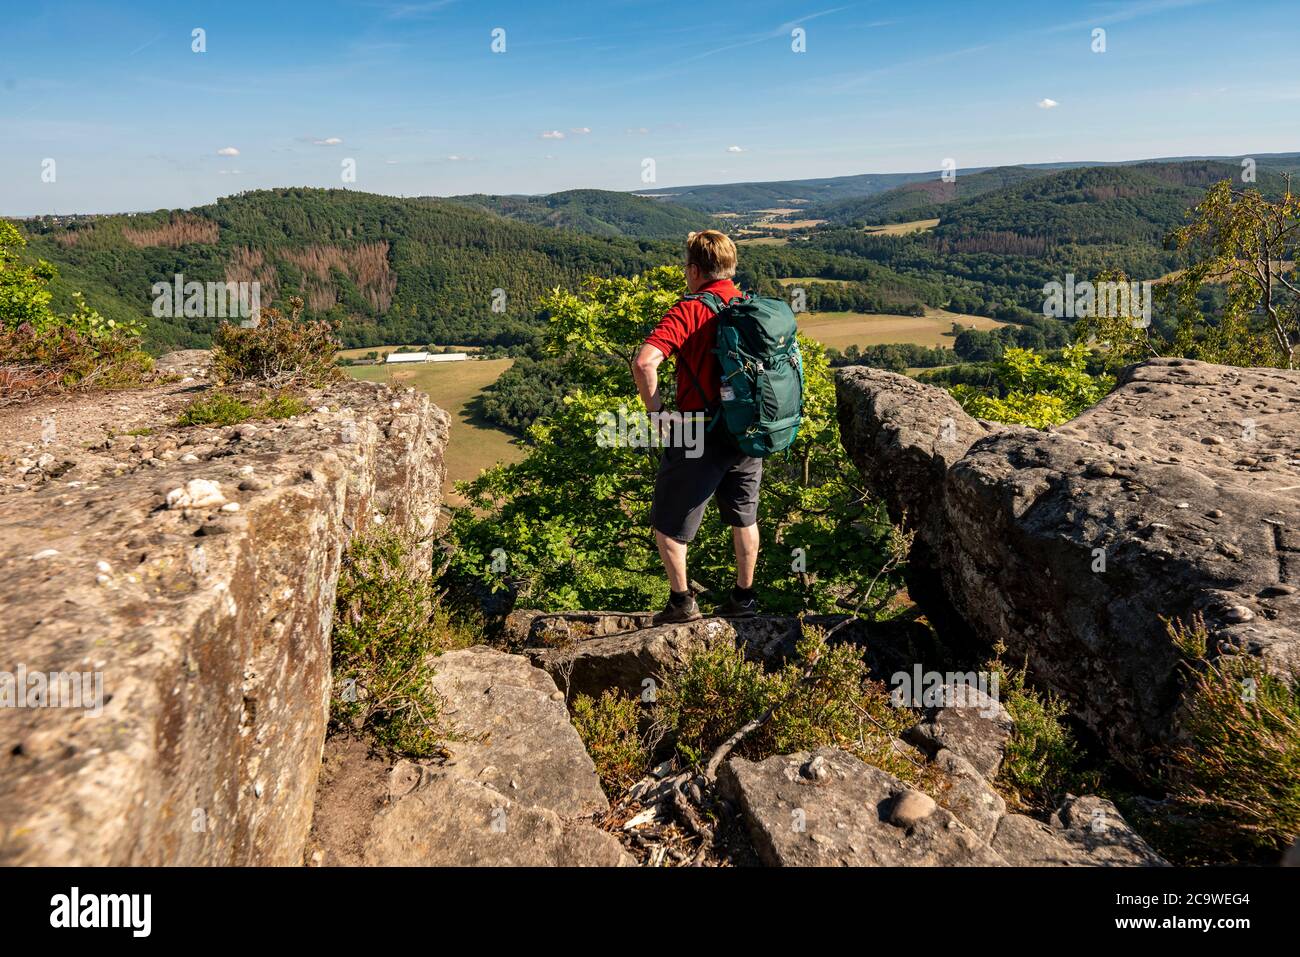 Eugenienstein, Blick auf das Rurtal, Landschaft entlang der roten Sandsteinroute, in der Region Rur-Eifel, bei Nideggen, Kreis Düren, NRW, Deutschland Stockfoto